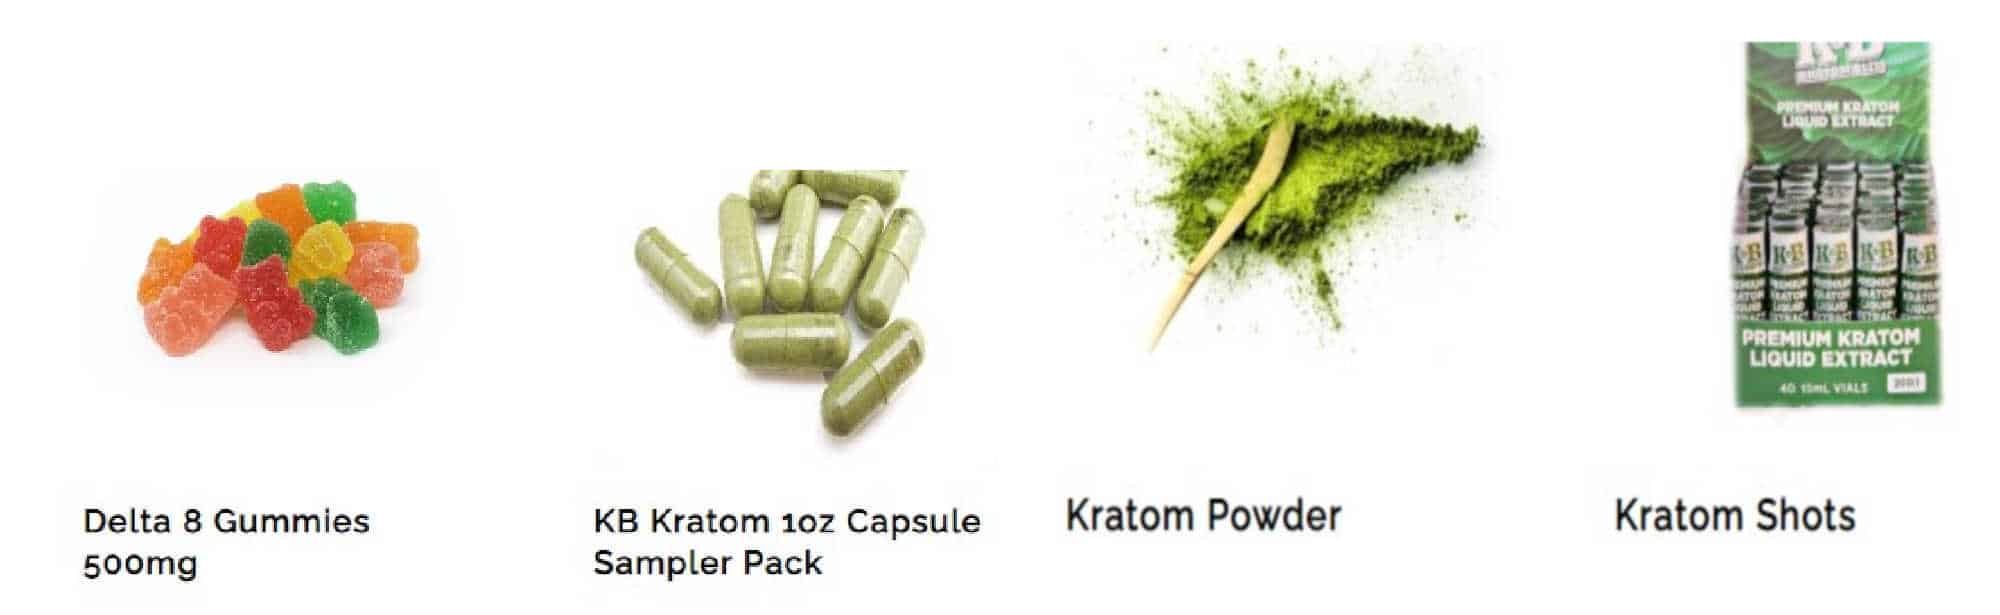 image of buy natural meds kratom products